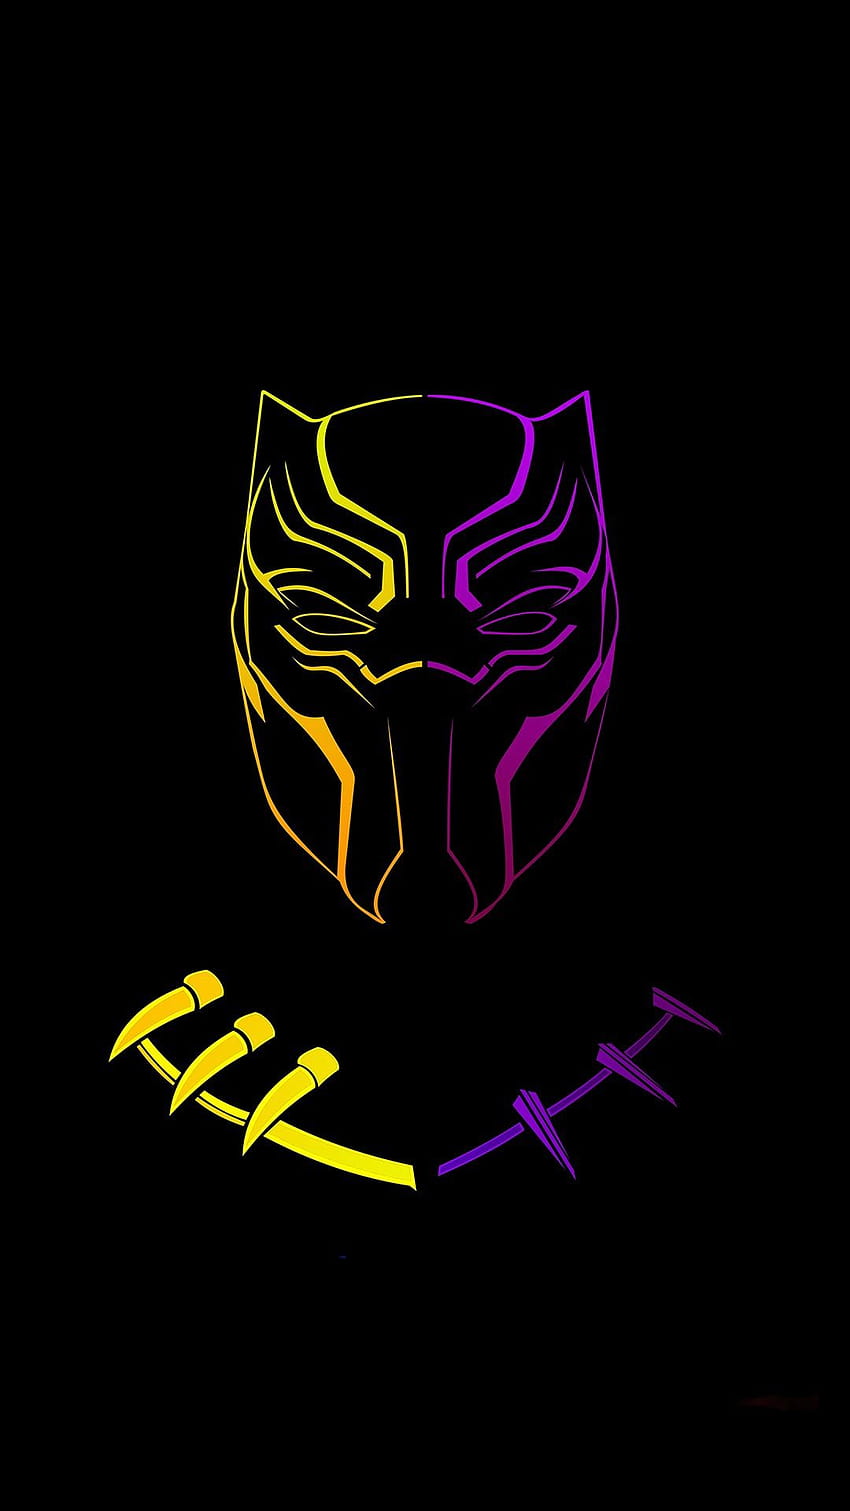 Flash boy on block panther logos, black panther and naruto HD phone wallpaper